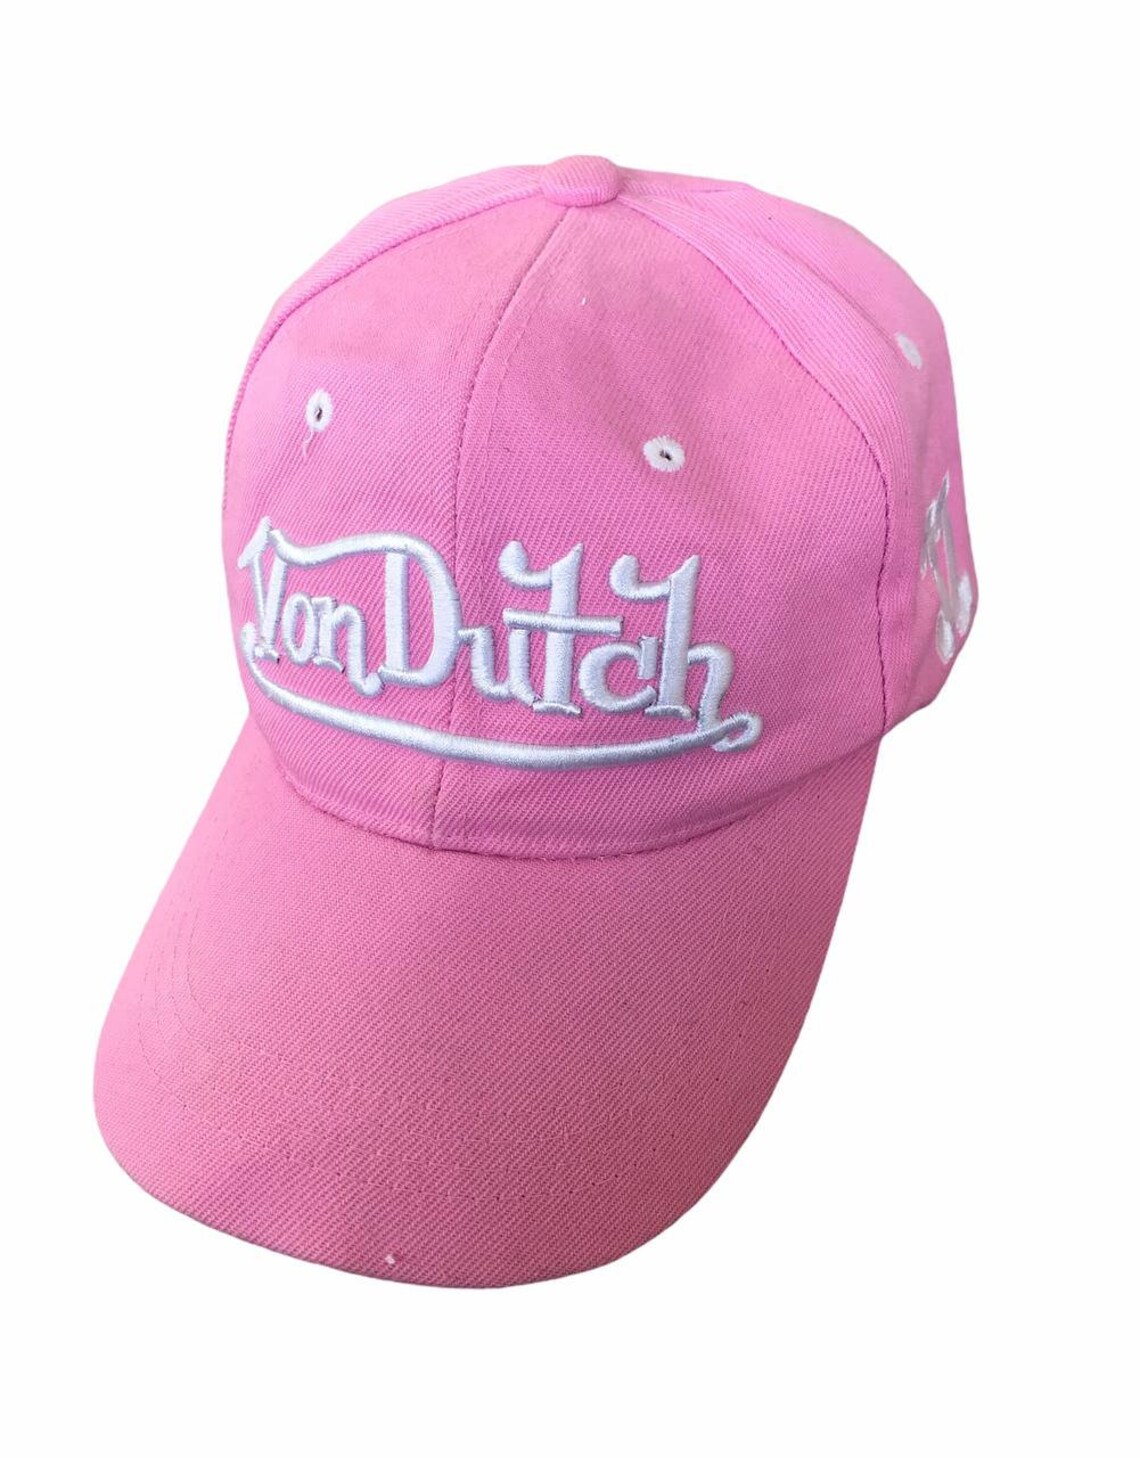 Von Dutch Pink Cap Hat One Size Baseball Cap Dad Cap | Etsy